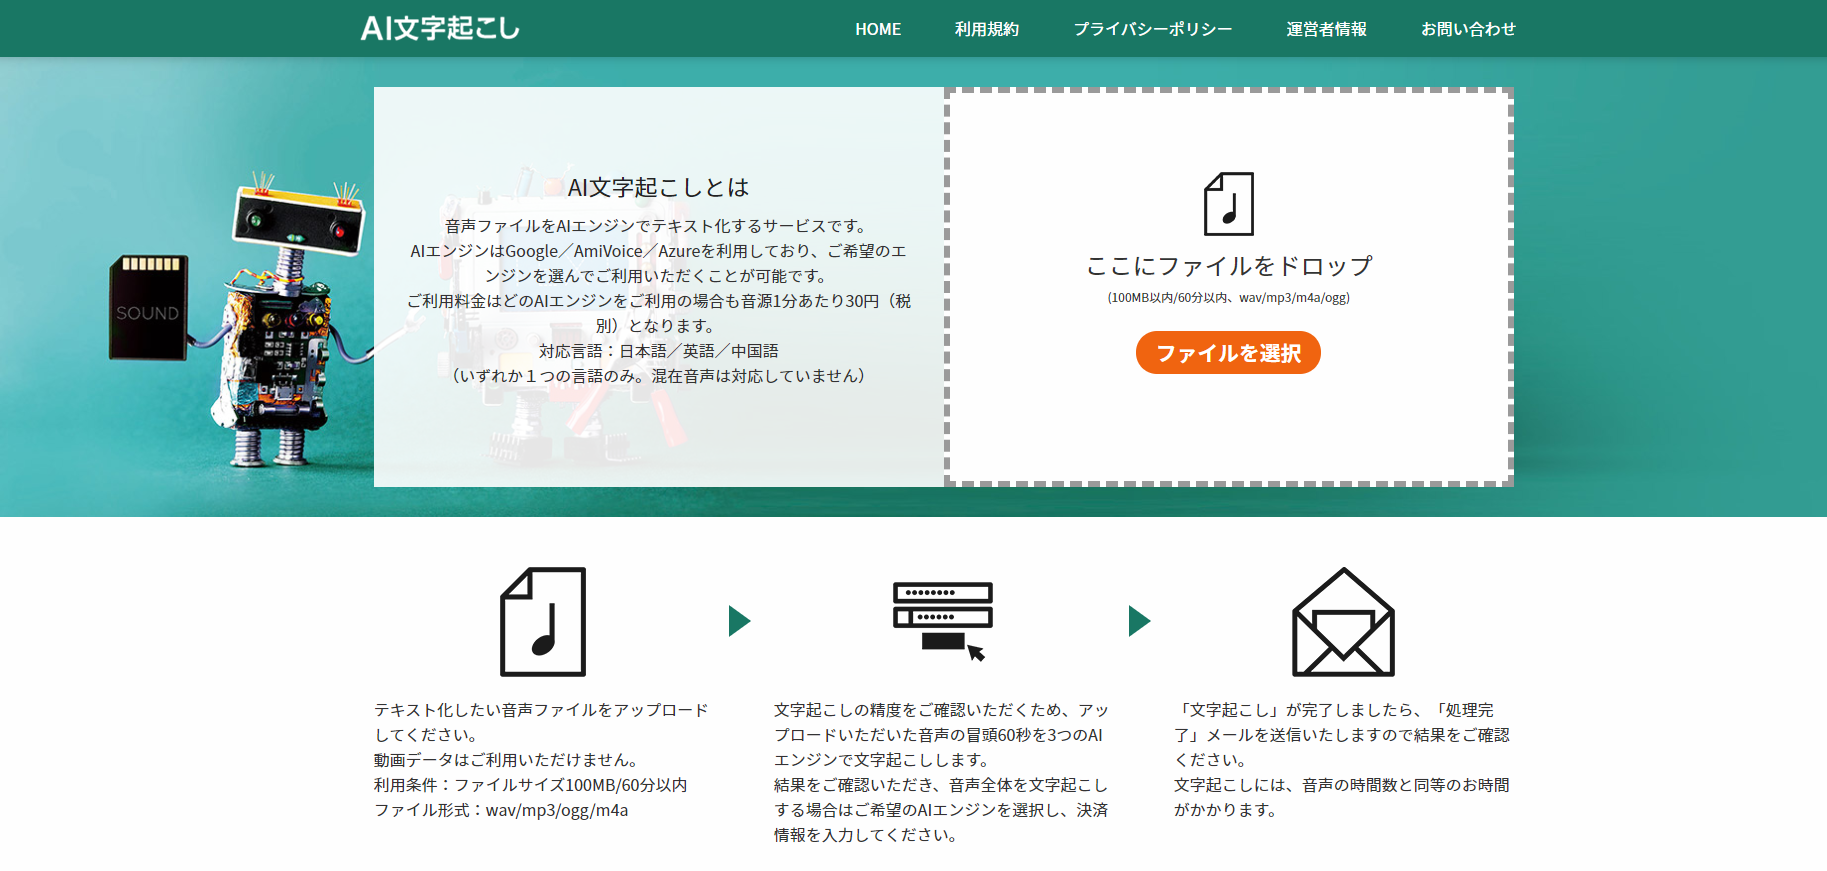 3つのaiエンジンで文字起こしを行う Ai文字起こし サービスを9月1日より提供開始 株式会社東京アーカイブセンターのプレスリリース